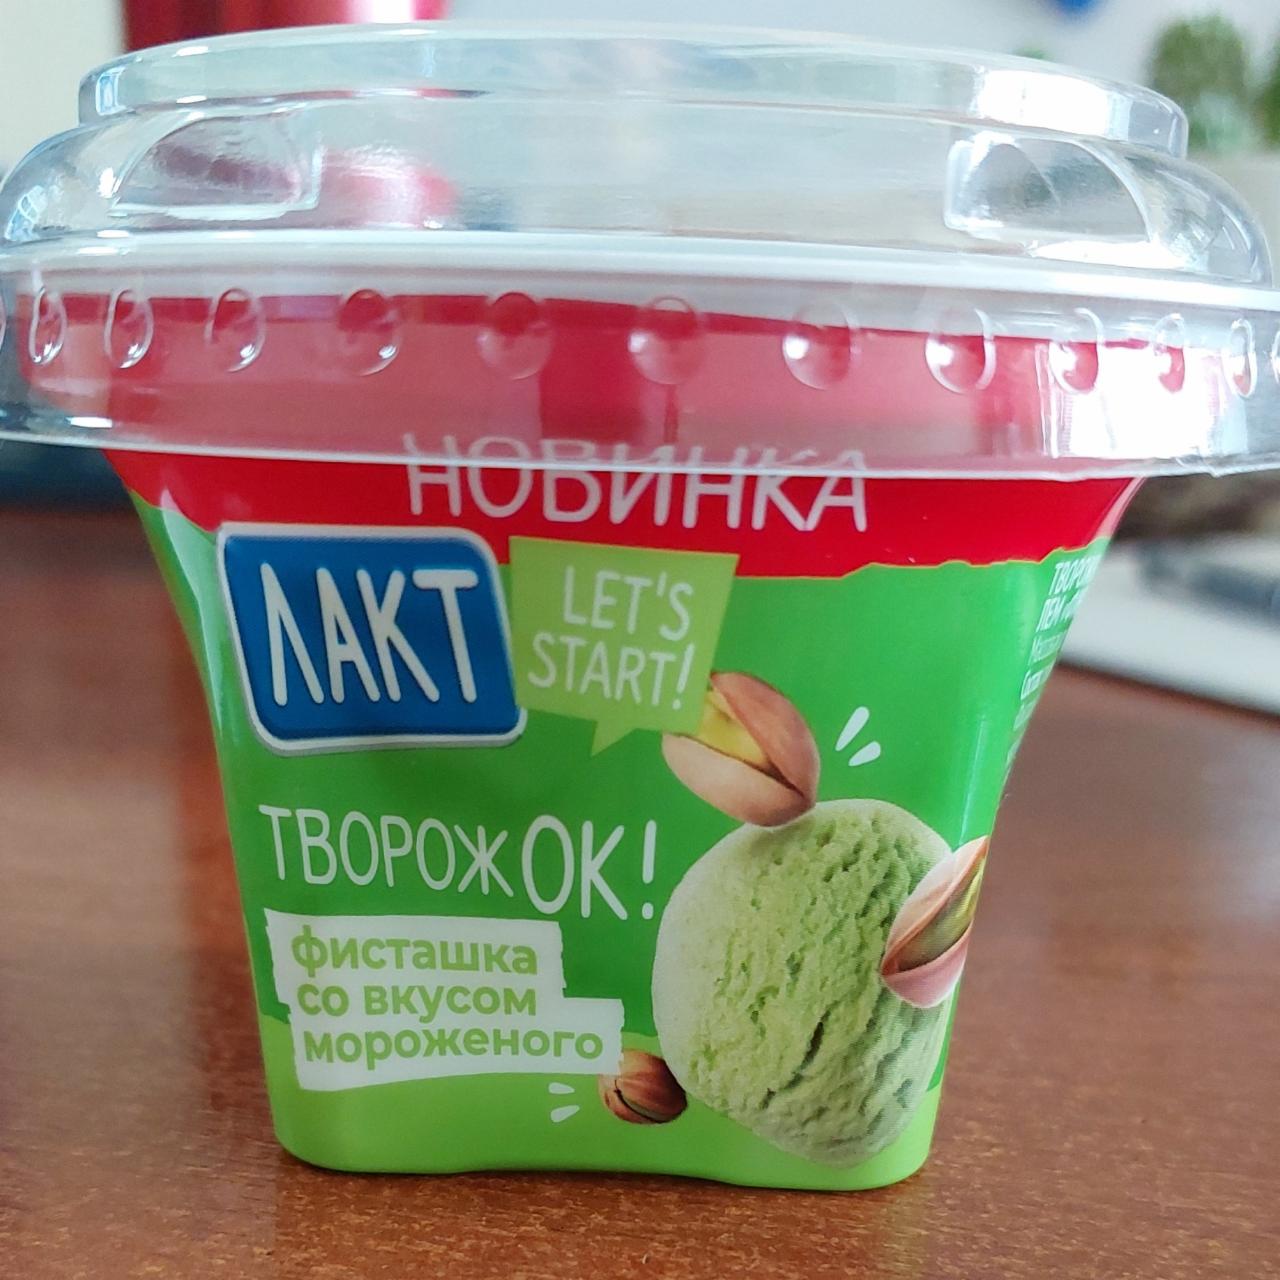 Фото - Творожок фисташка со вкусом мороженого Лакт